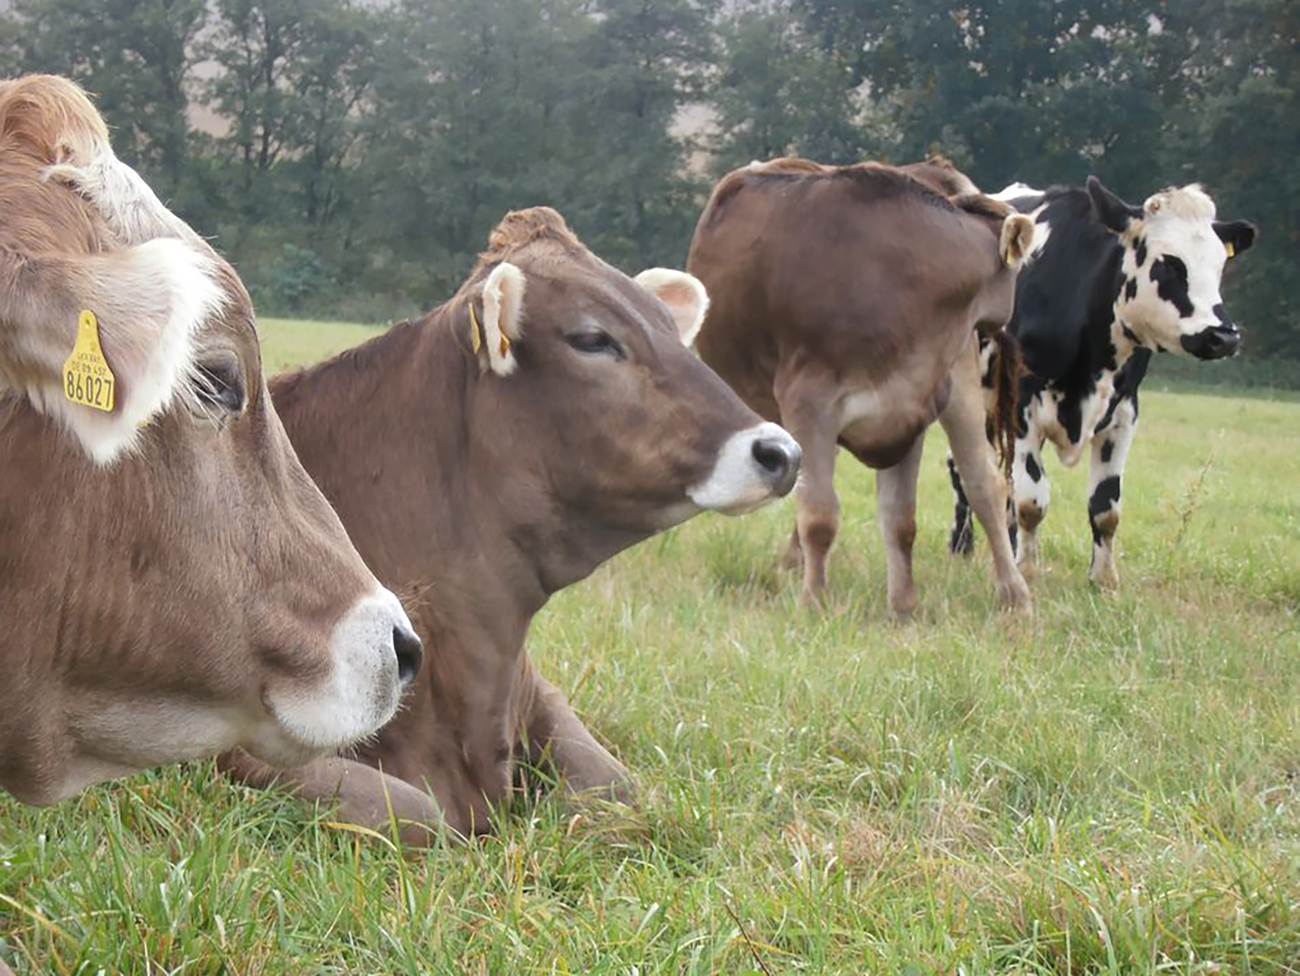 Farma Struhy: Příběh o lásce k mléku a zodpovědnému hospodaření